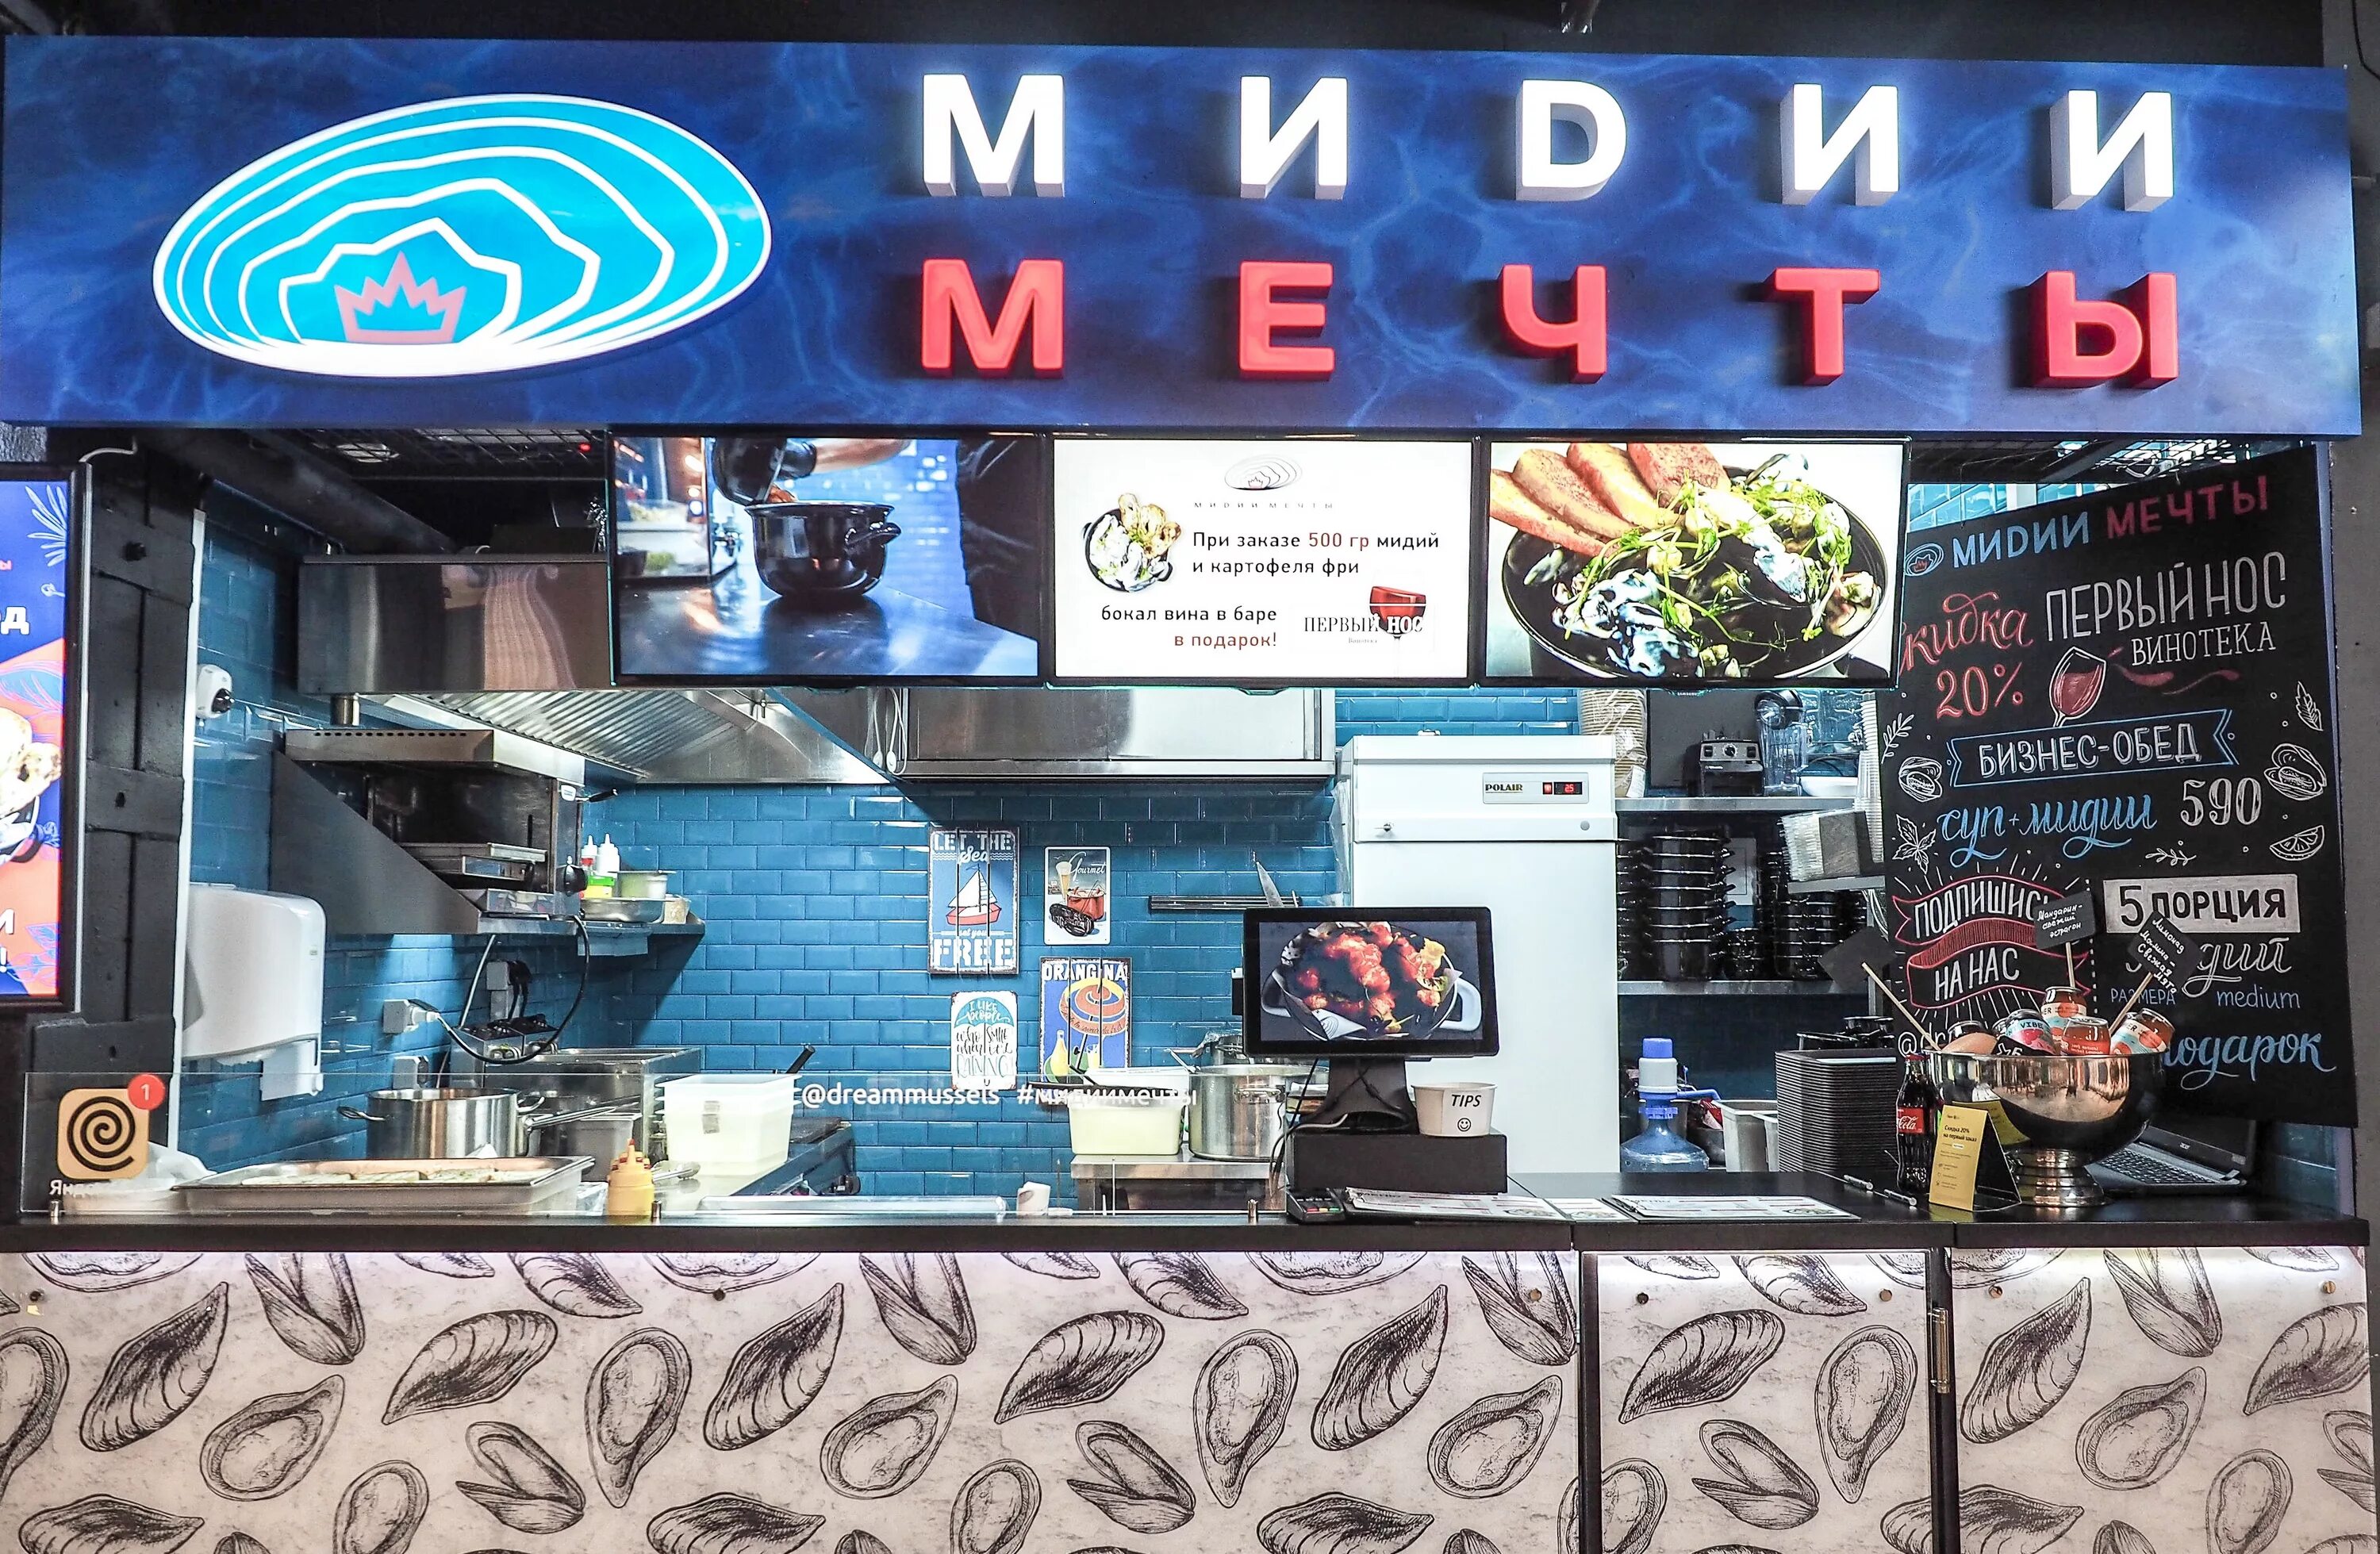 Мидийное место пушкинская ул 2. Моллюска ресторан. Ресторан мидии мечты. Мидии в кафе. Мидии кафе в Москве.